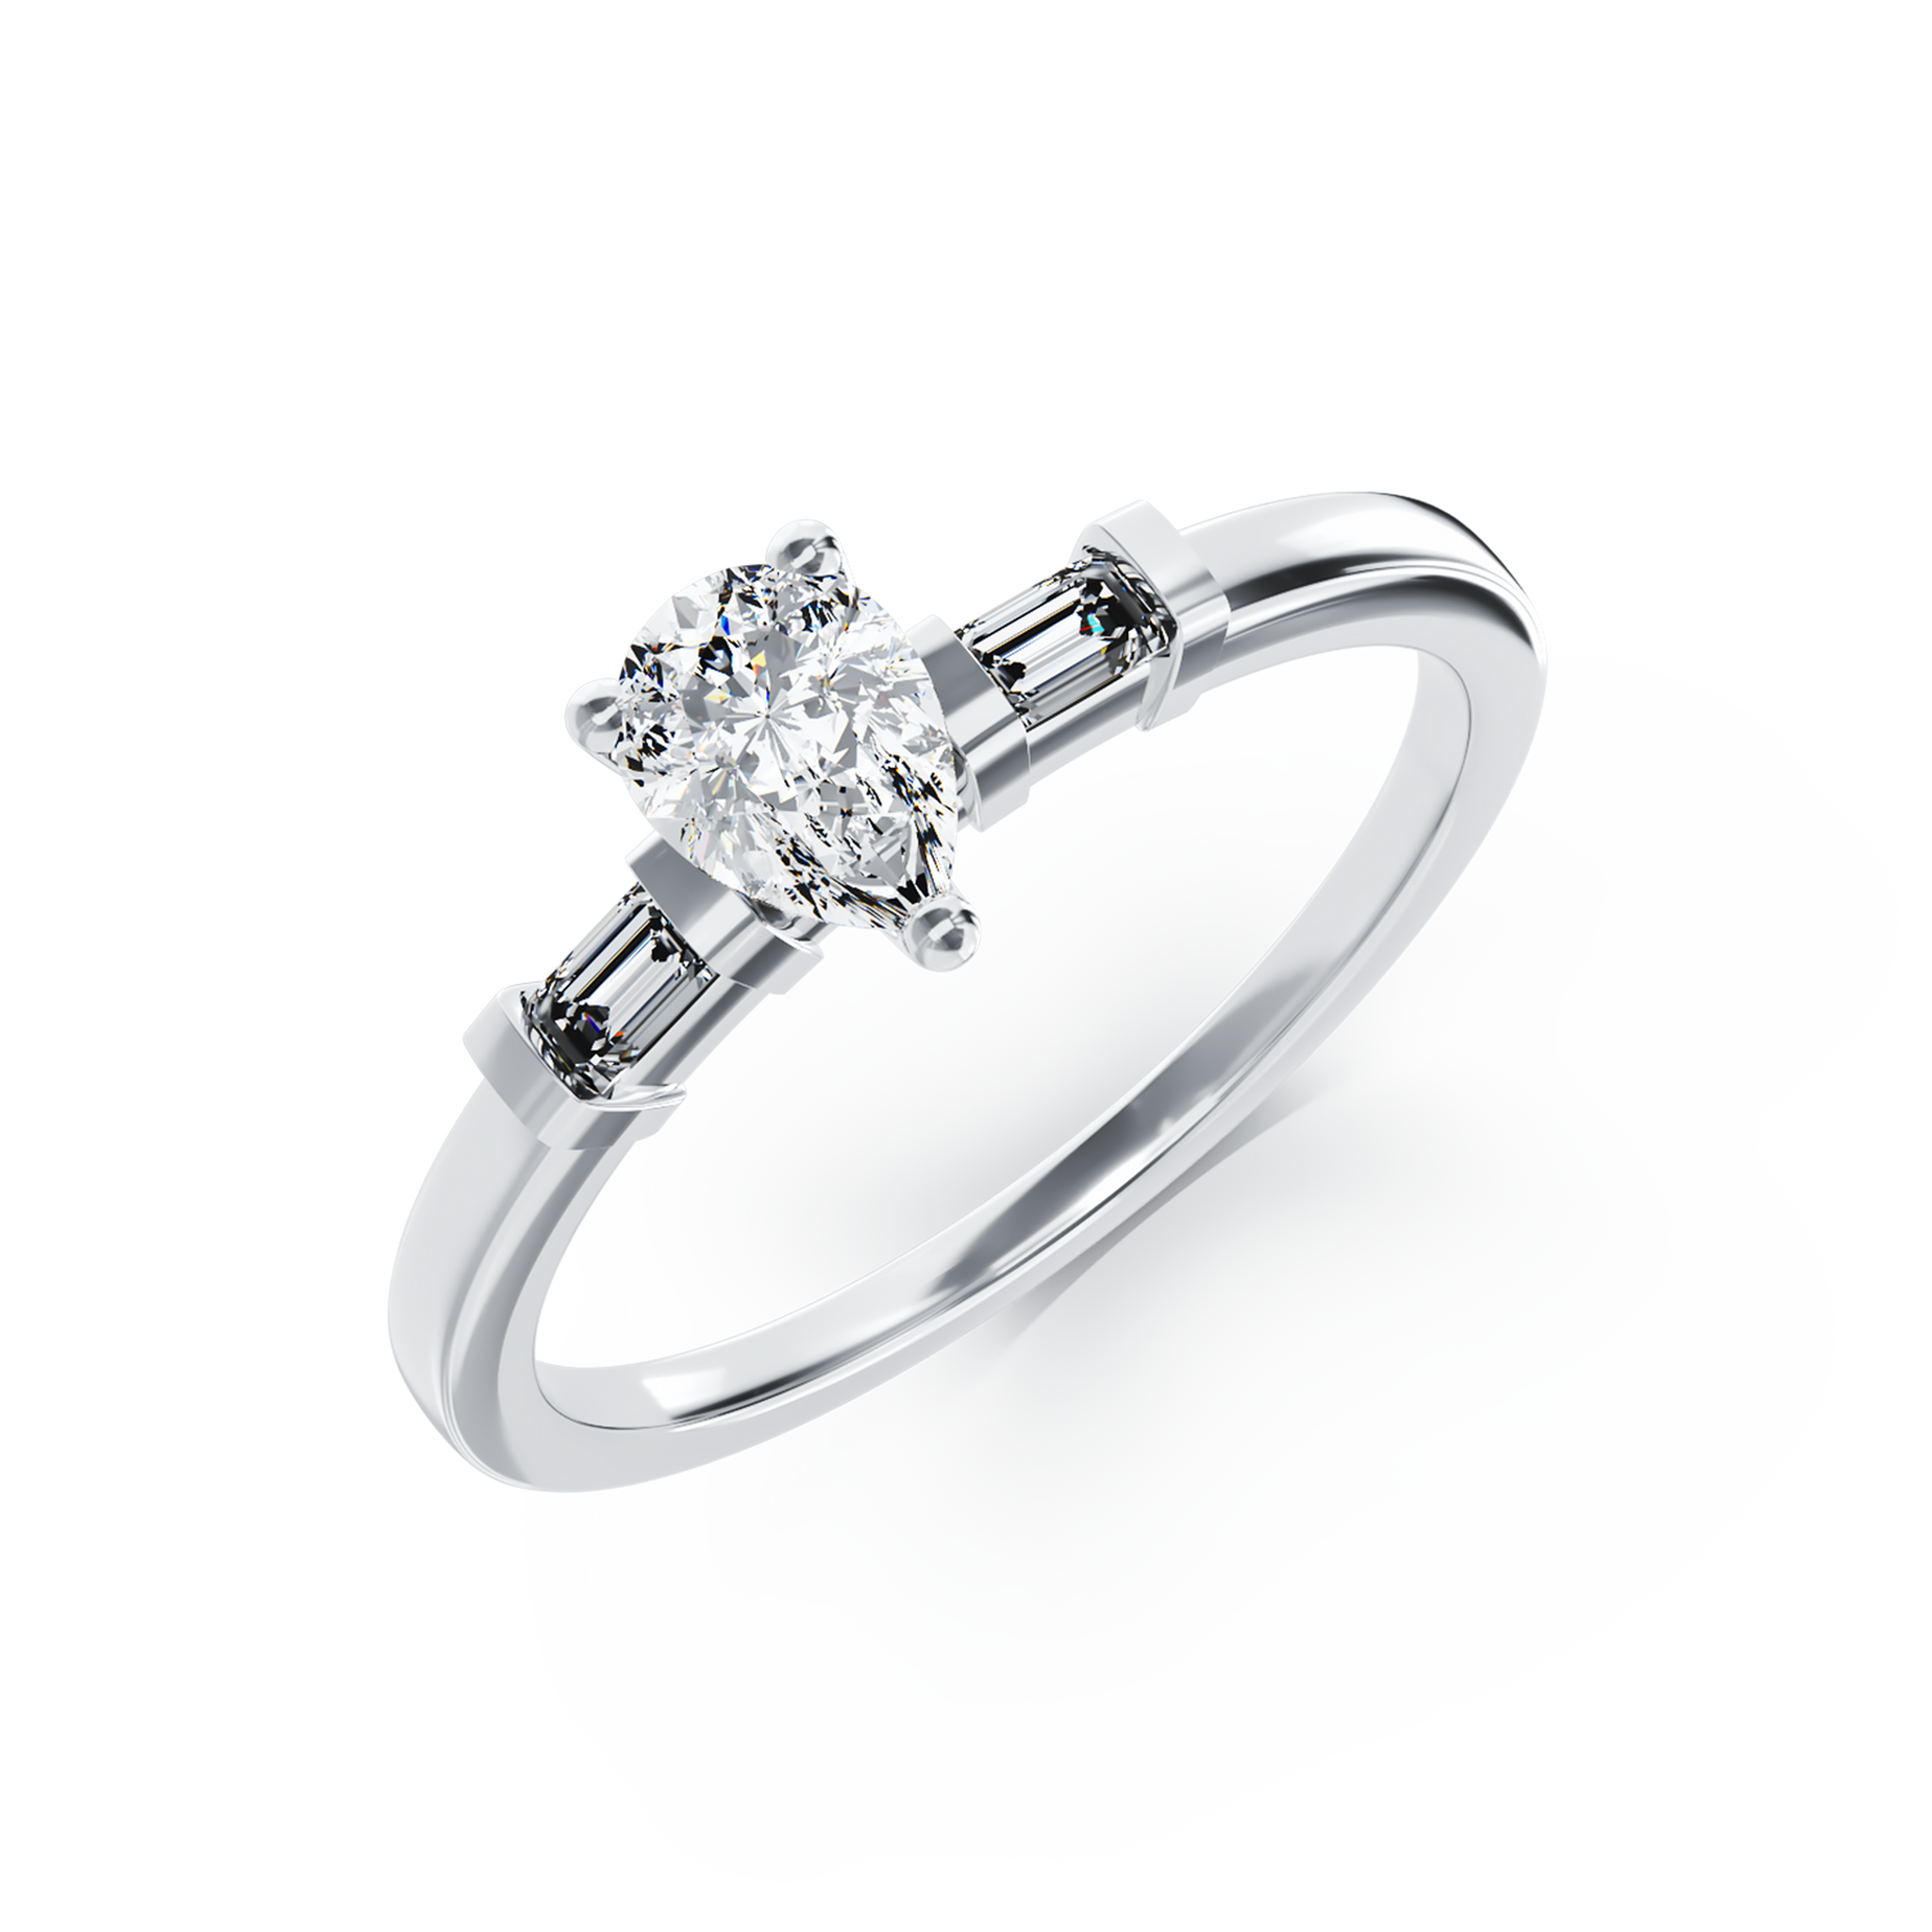 Eljegyzési gyűrű 18K-os fehér aranyból 0,41ct gyémánttal és 0,08ct gyémántokkal. Gramm: 2,79